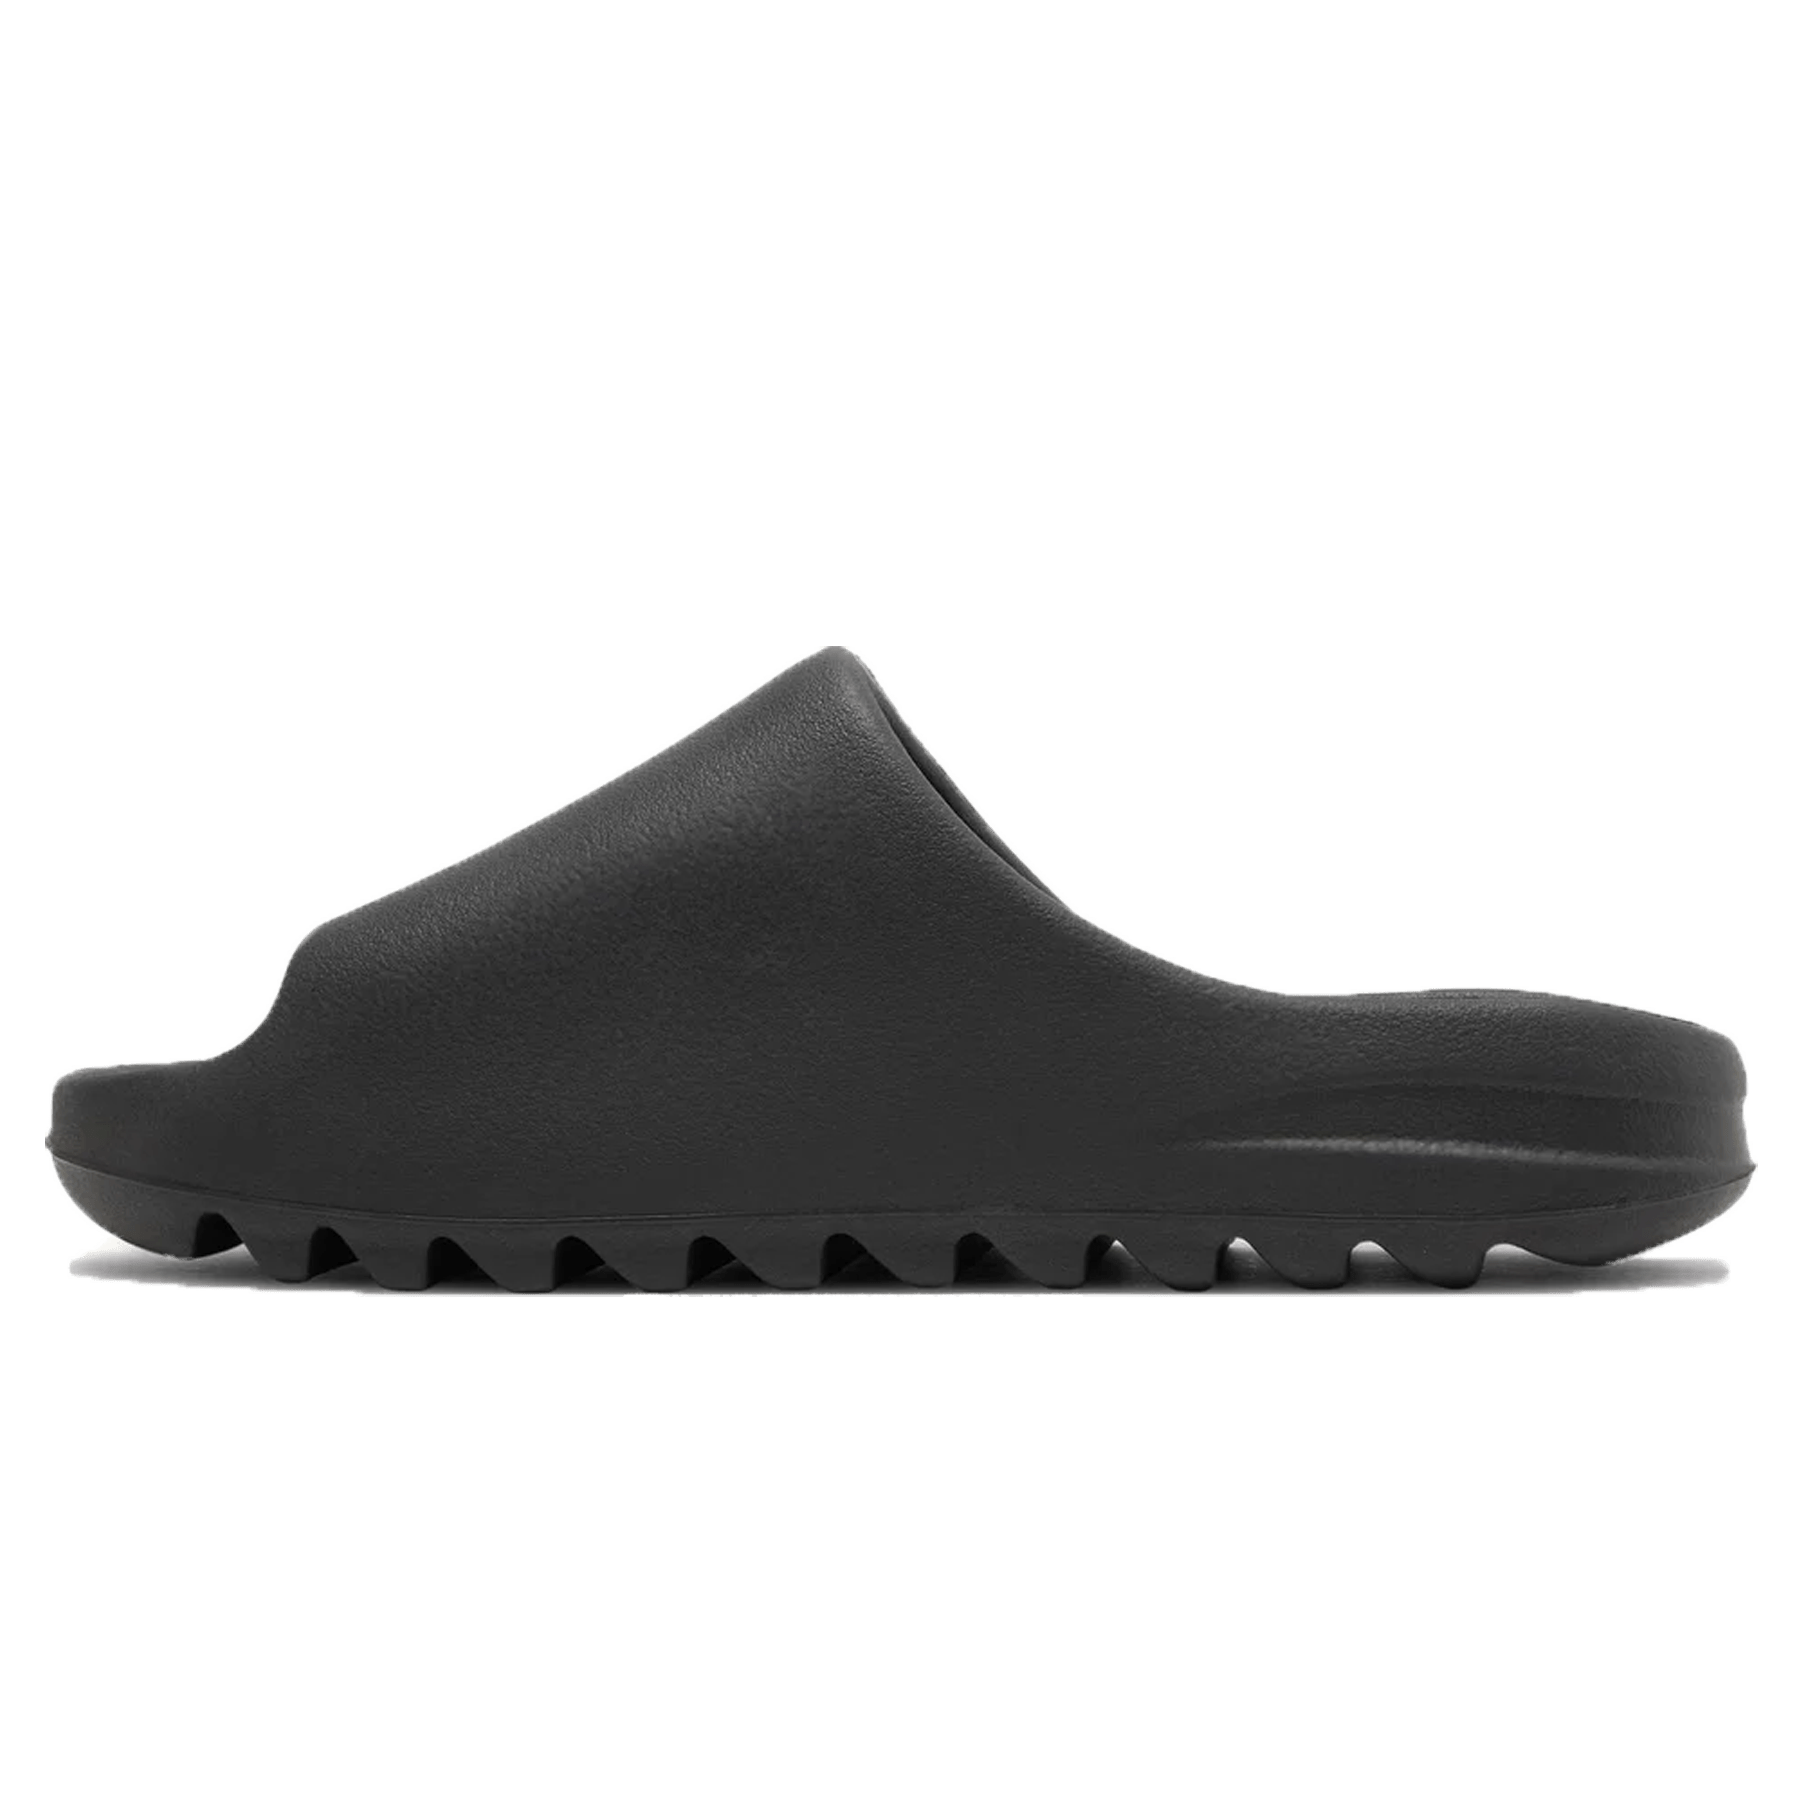 adidas Yeezy Slide 'Onyx' – Kick Game